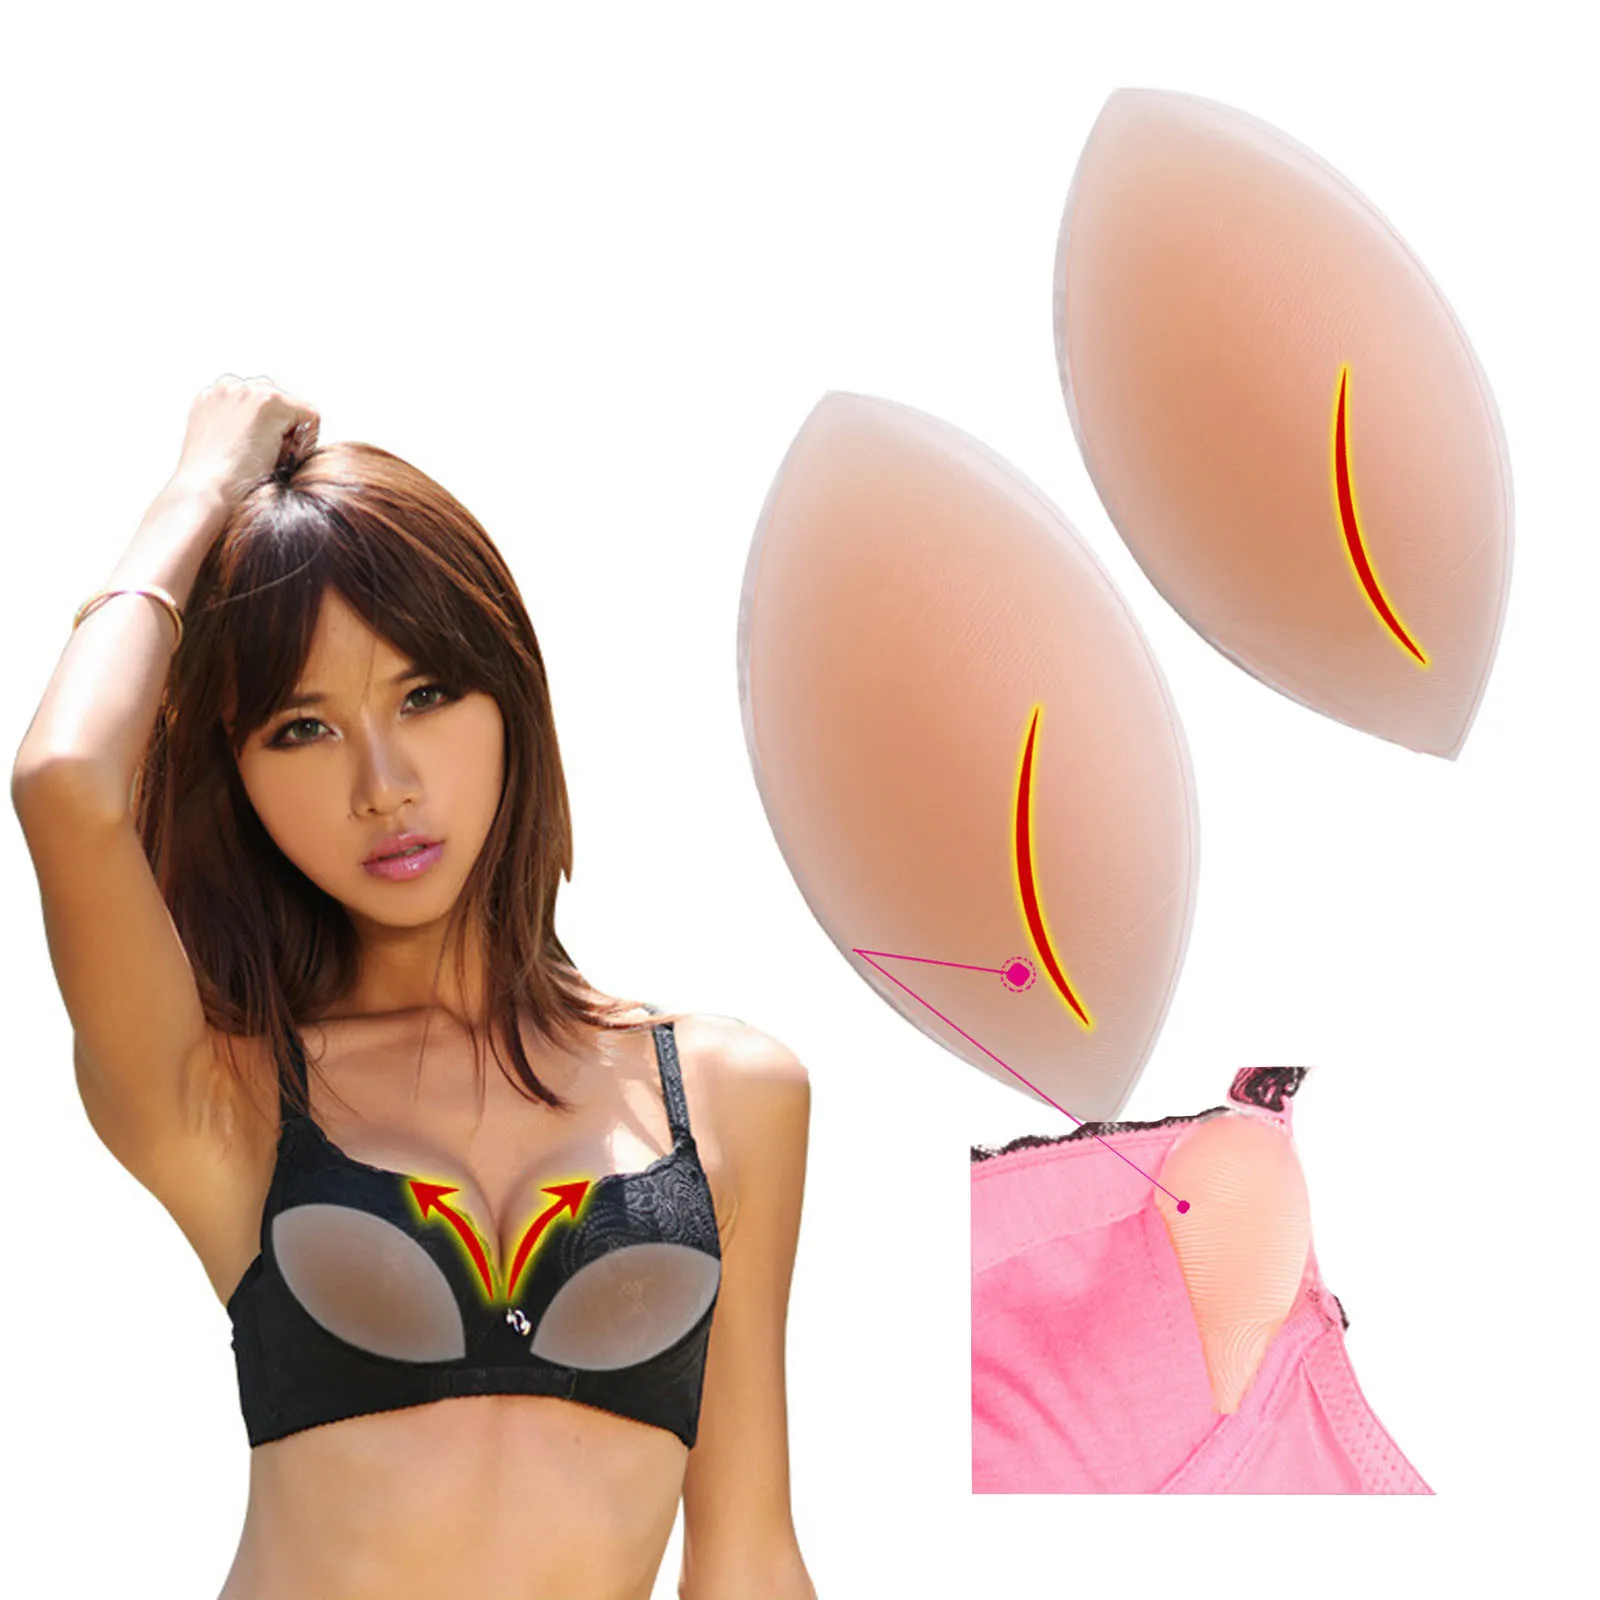 Сексуальный женский силиконовый бюстгальтер, гелевые невидимые вставки,  накладки для груди для платья, бикини, купальник, бюстгальтер пуш-ап,  вкладыши для увеличения груди # g3 | AliExpress